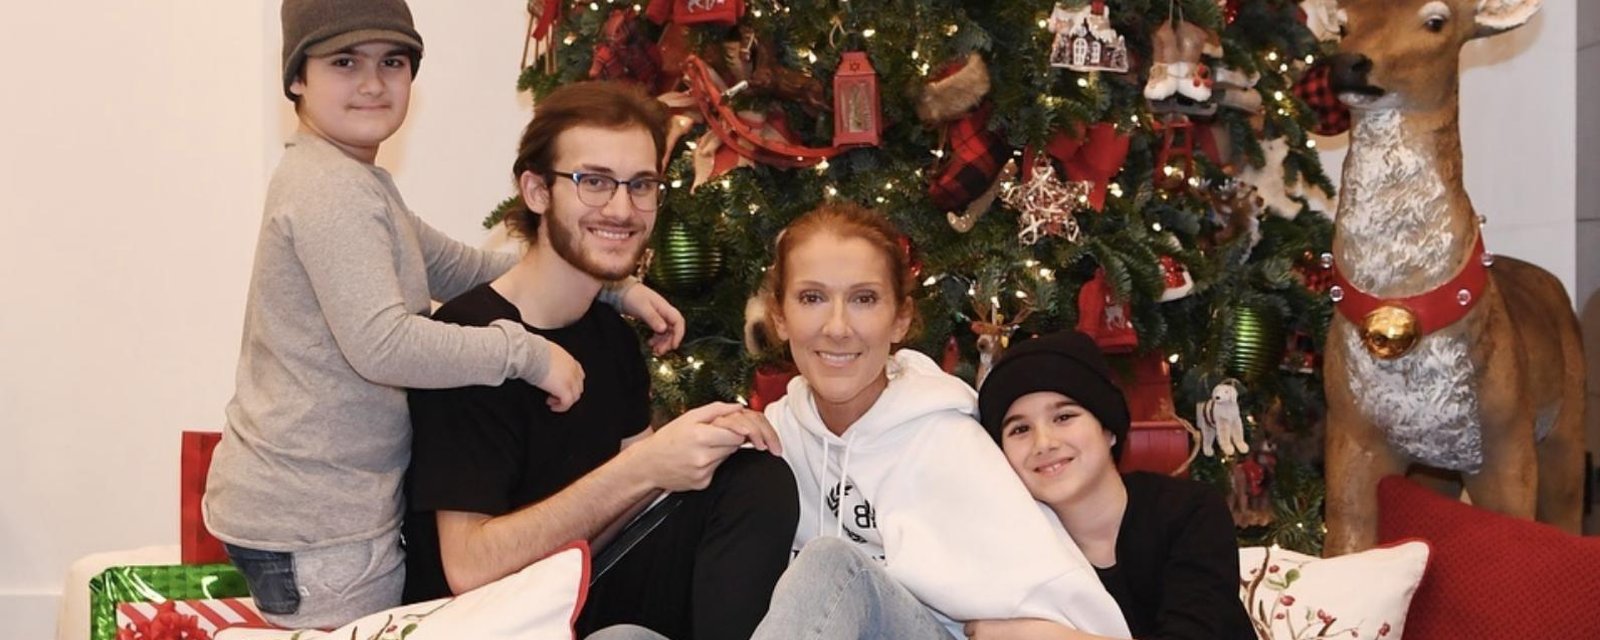 Céline Dion et ses enfants vous souhaitent un joyeux Noël... et leurs deux chiens aussi!